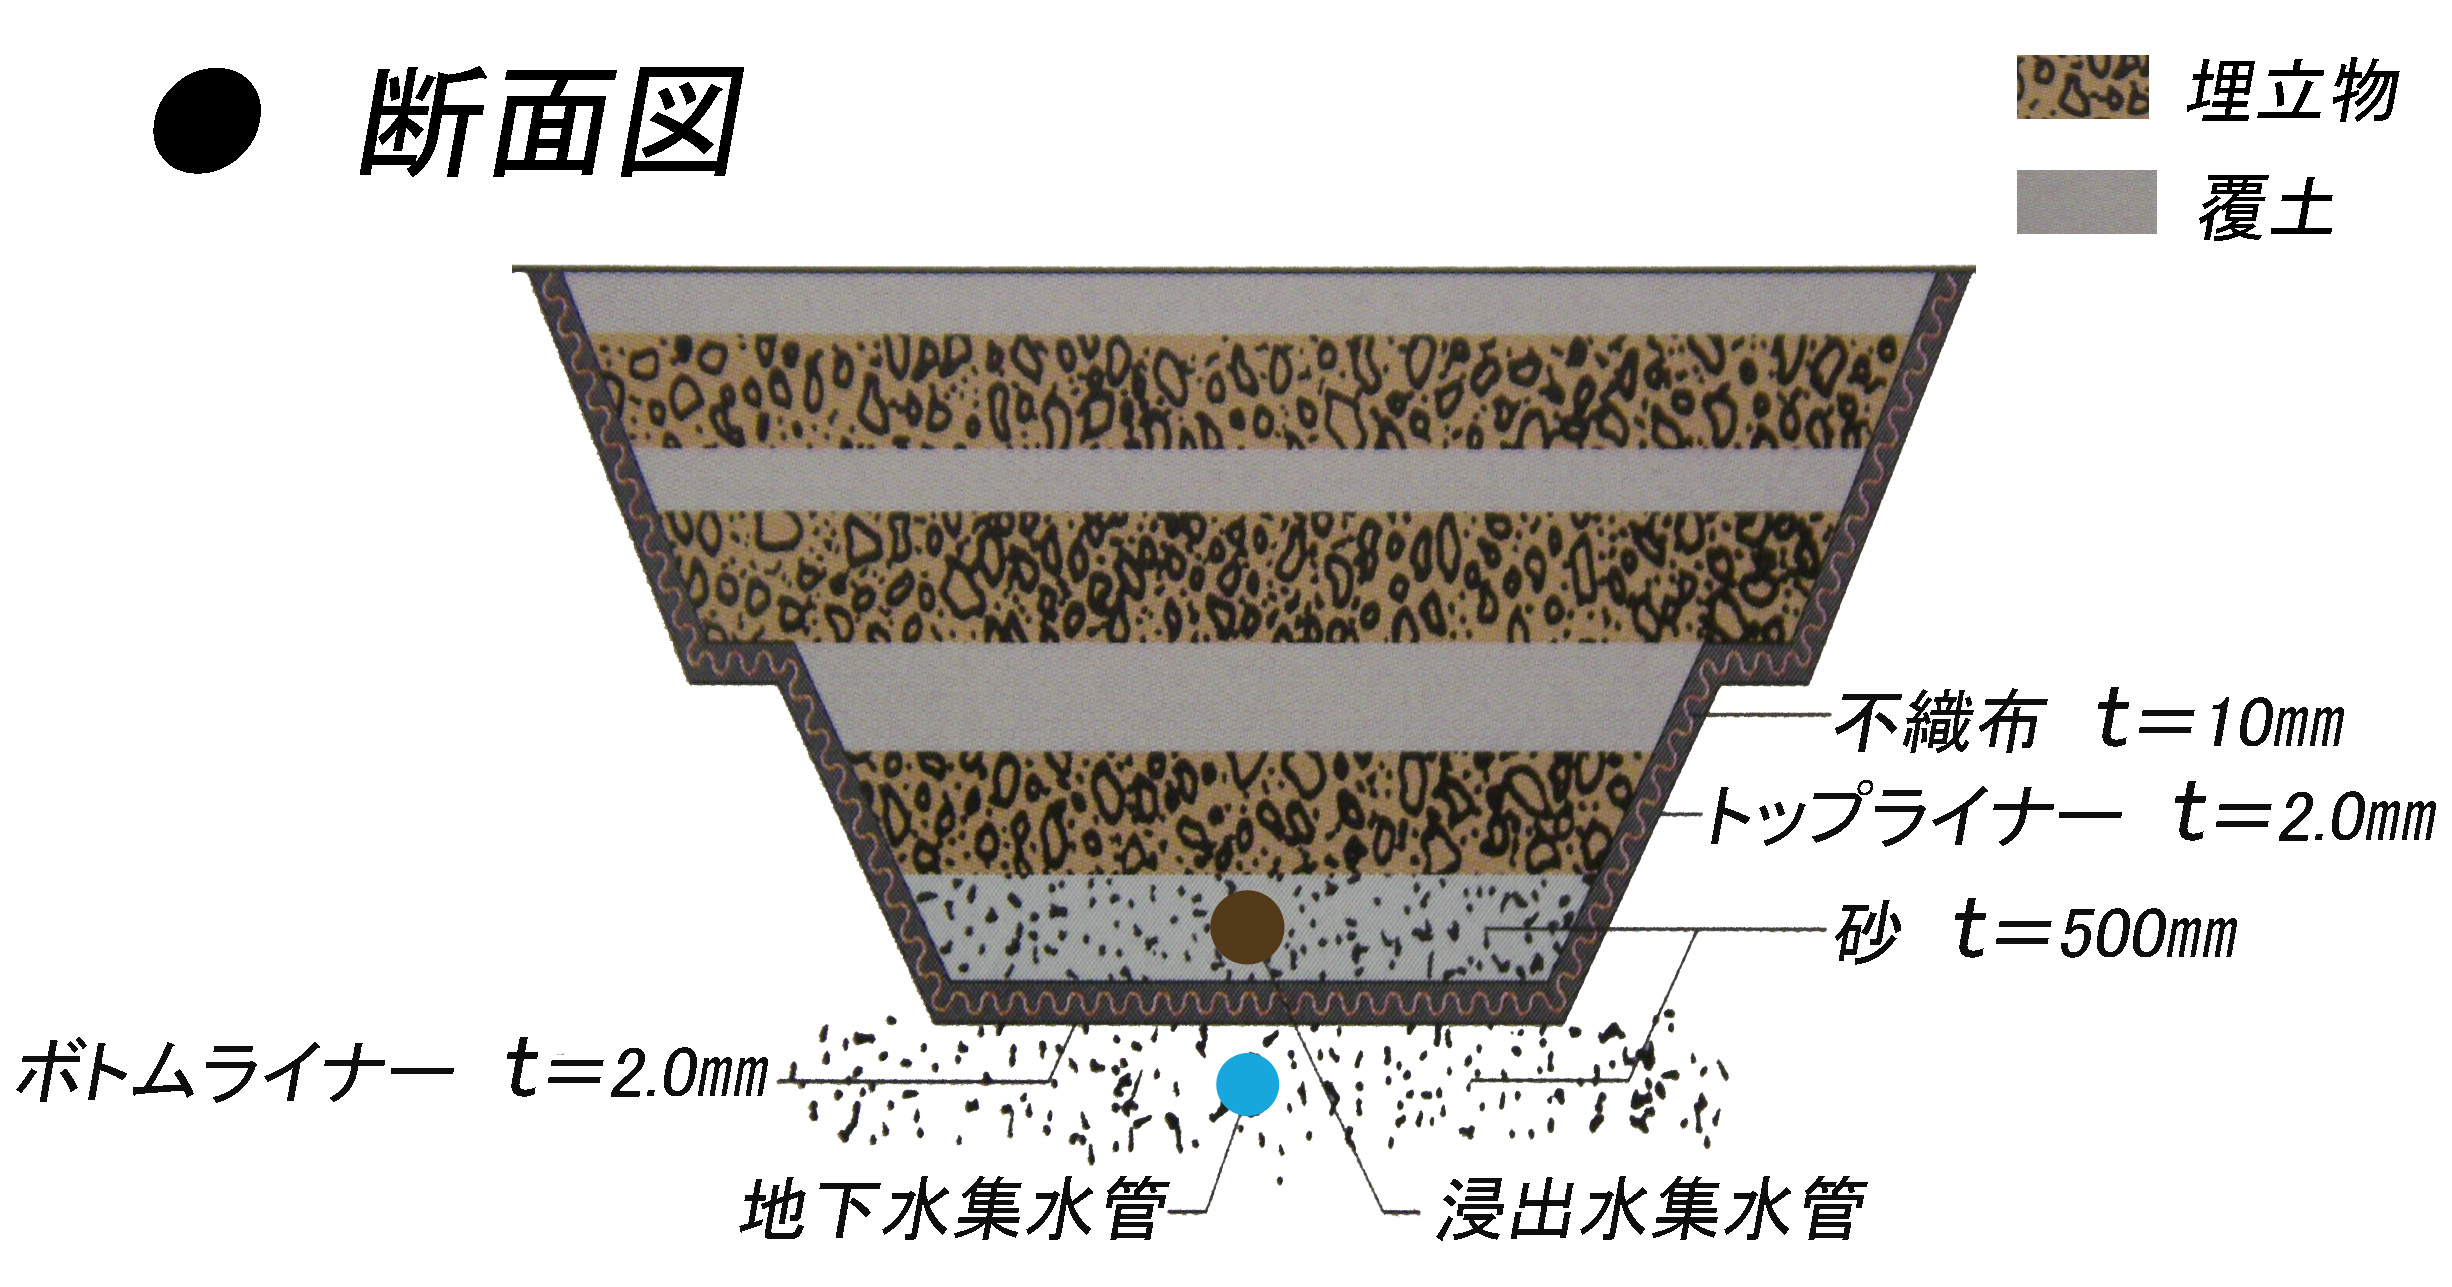 埋立方式(サンドイッチ式)のイラスト　ごみが厚さ3メートルになると、その上に50センチメートル土をかぶせていく方式です